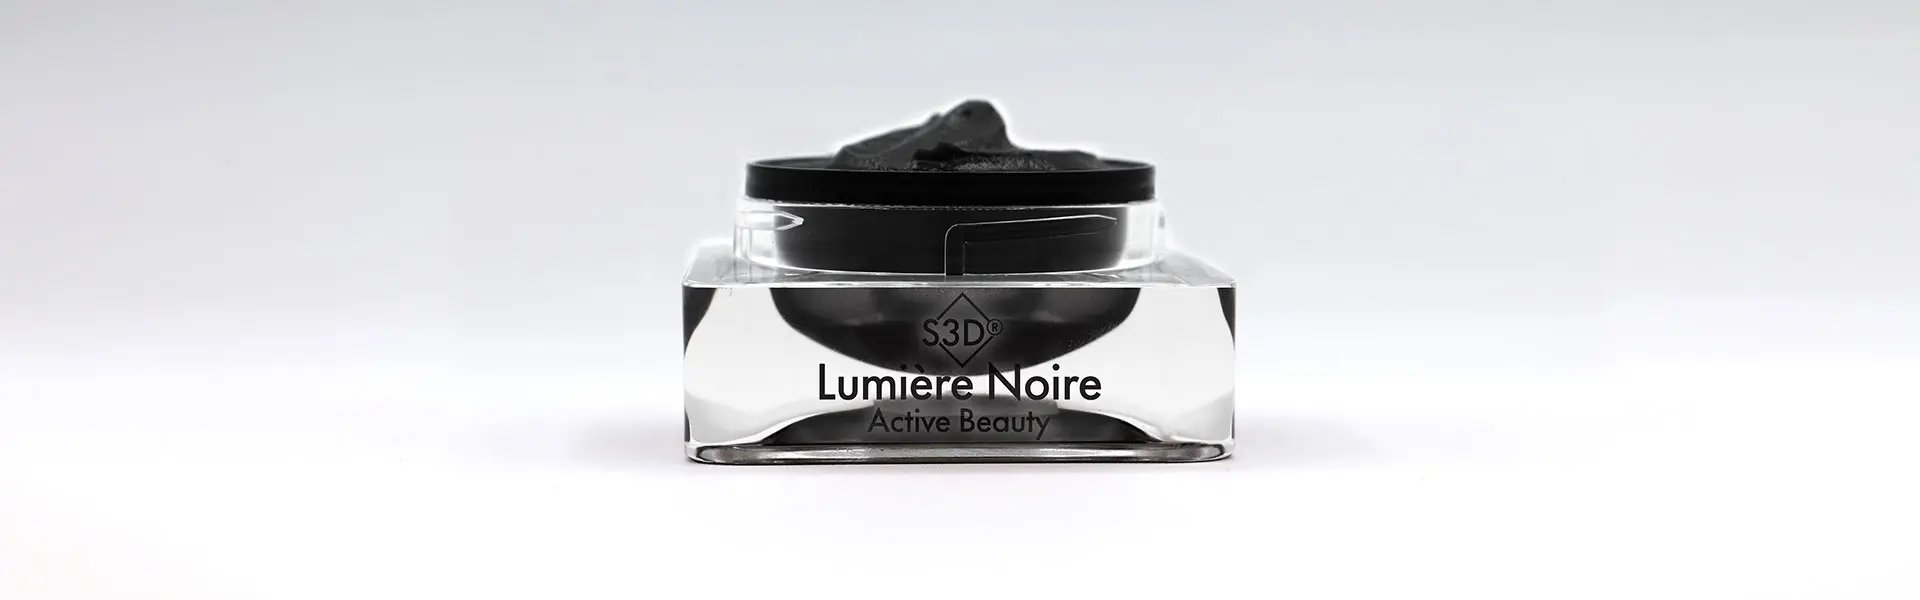 S3D® Lumière Noire